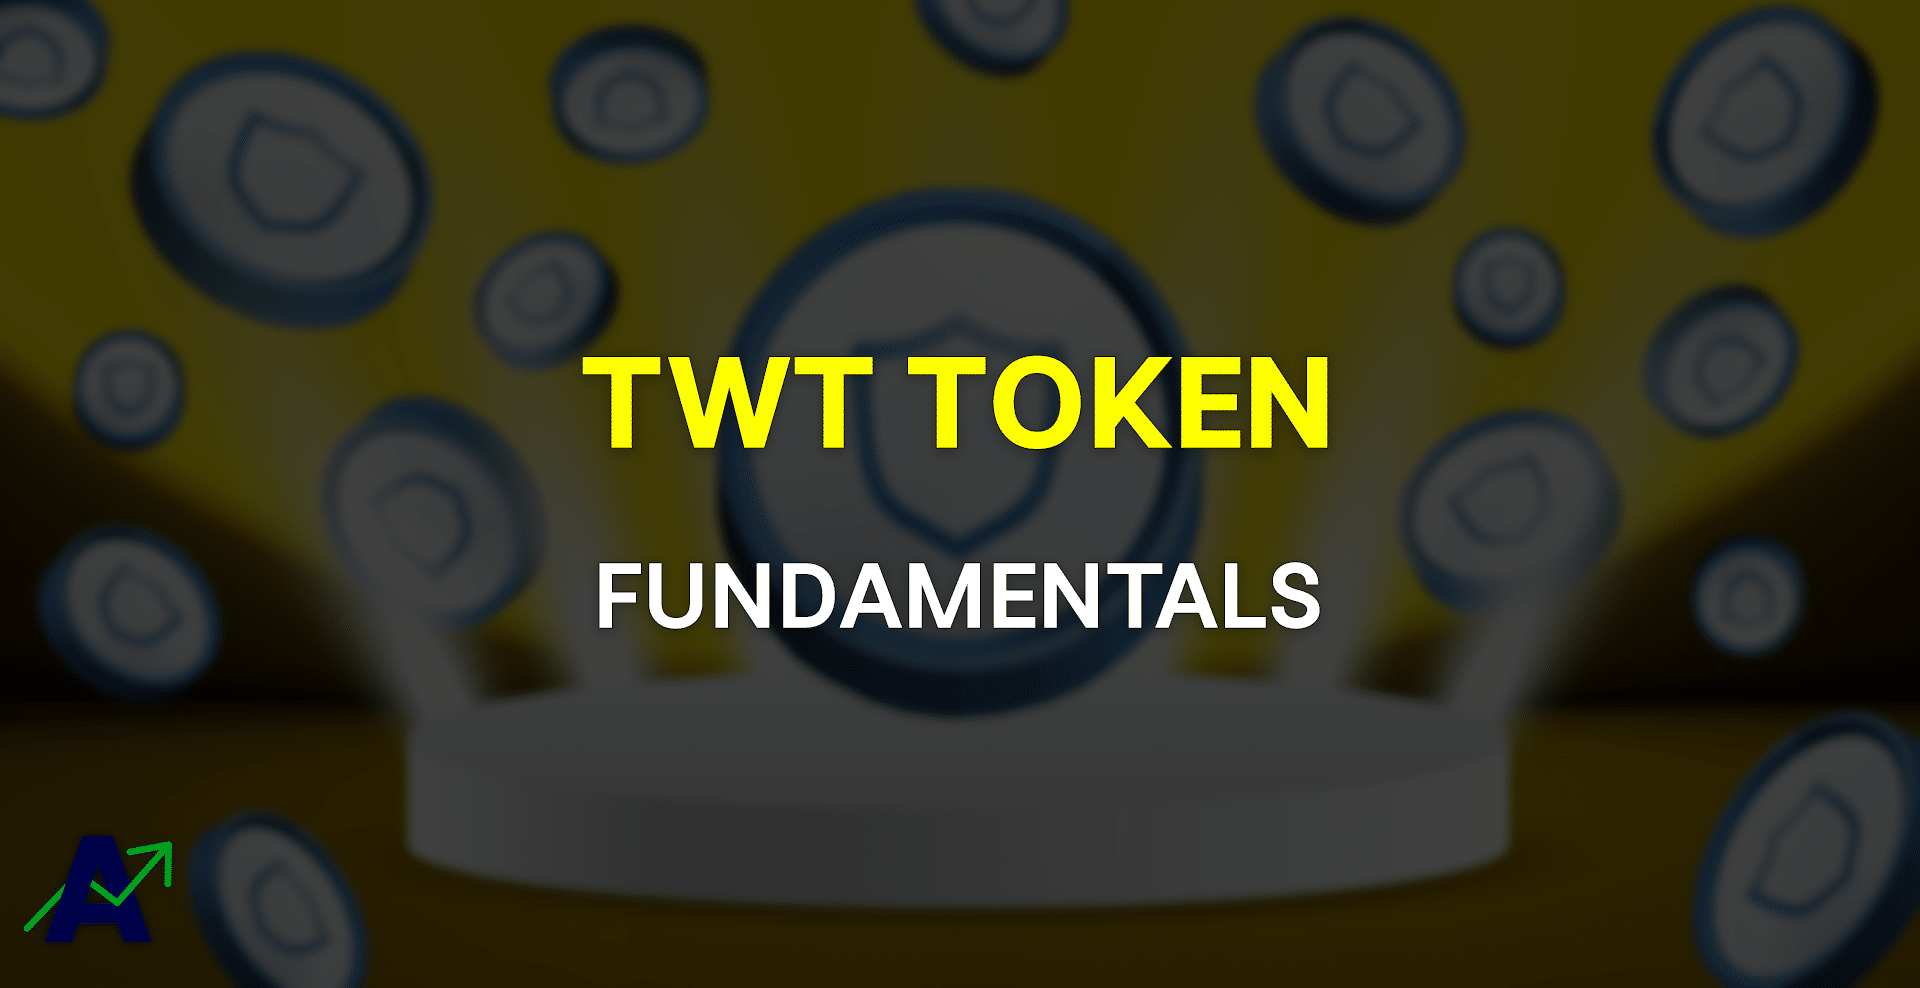 twt token fundamentals